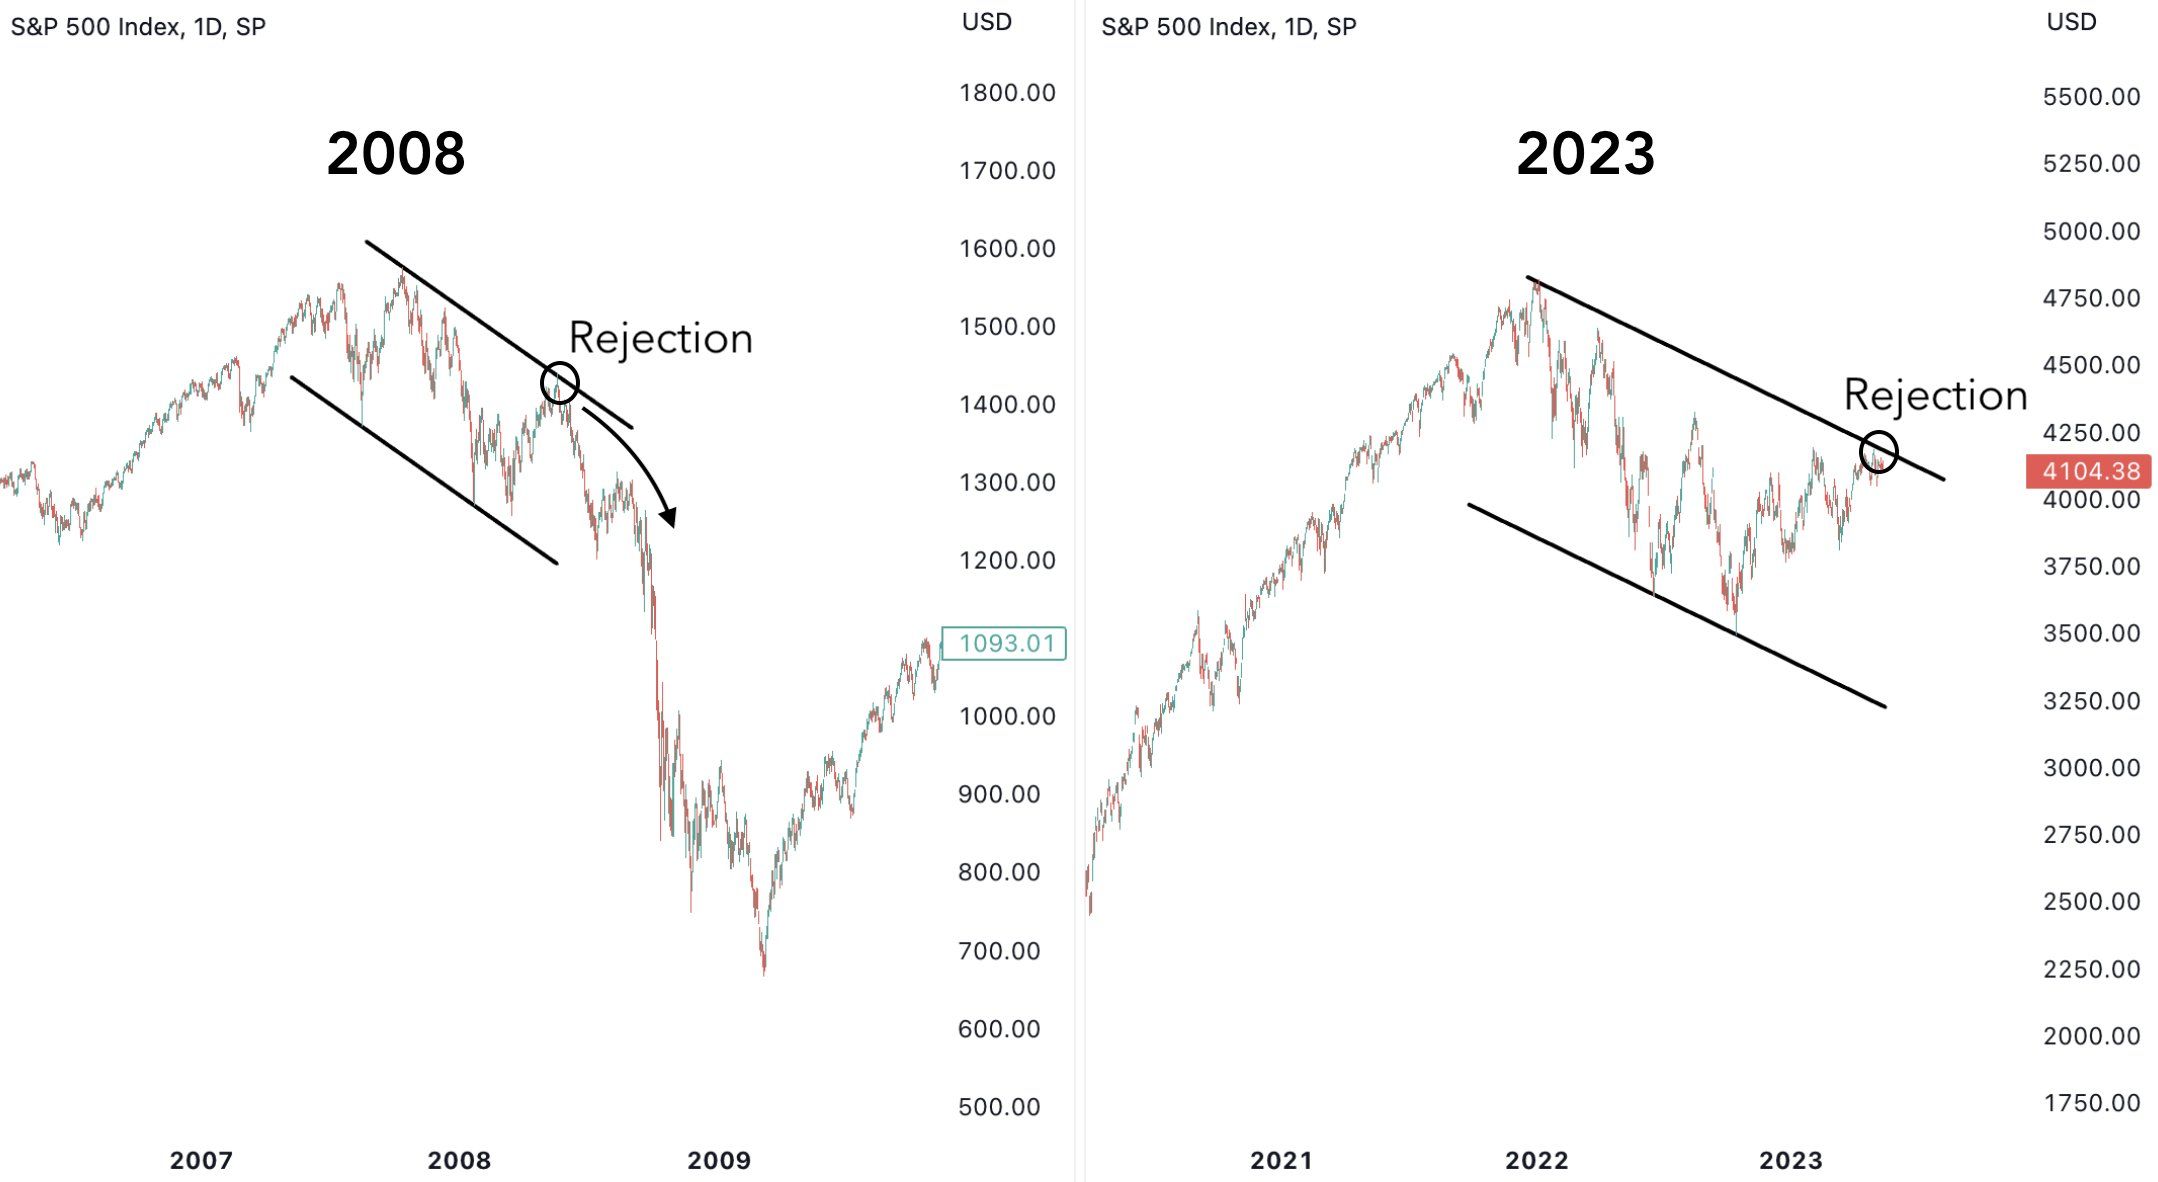 So sánh giai đoạn thị trường S&P500 2008 và 2023.